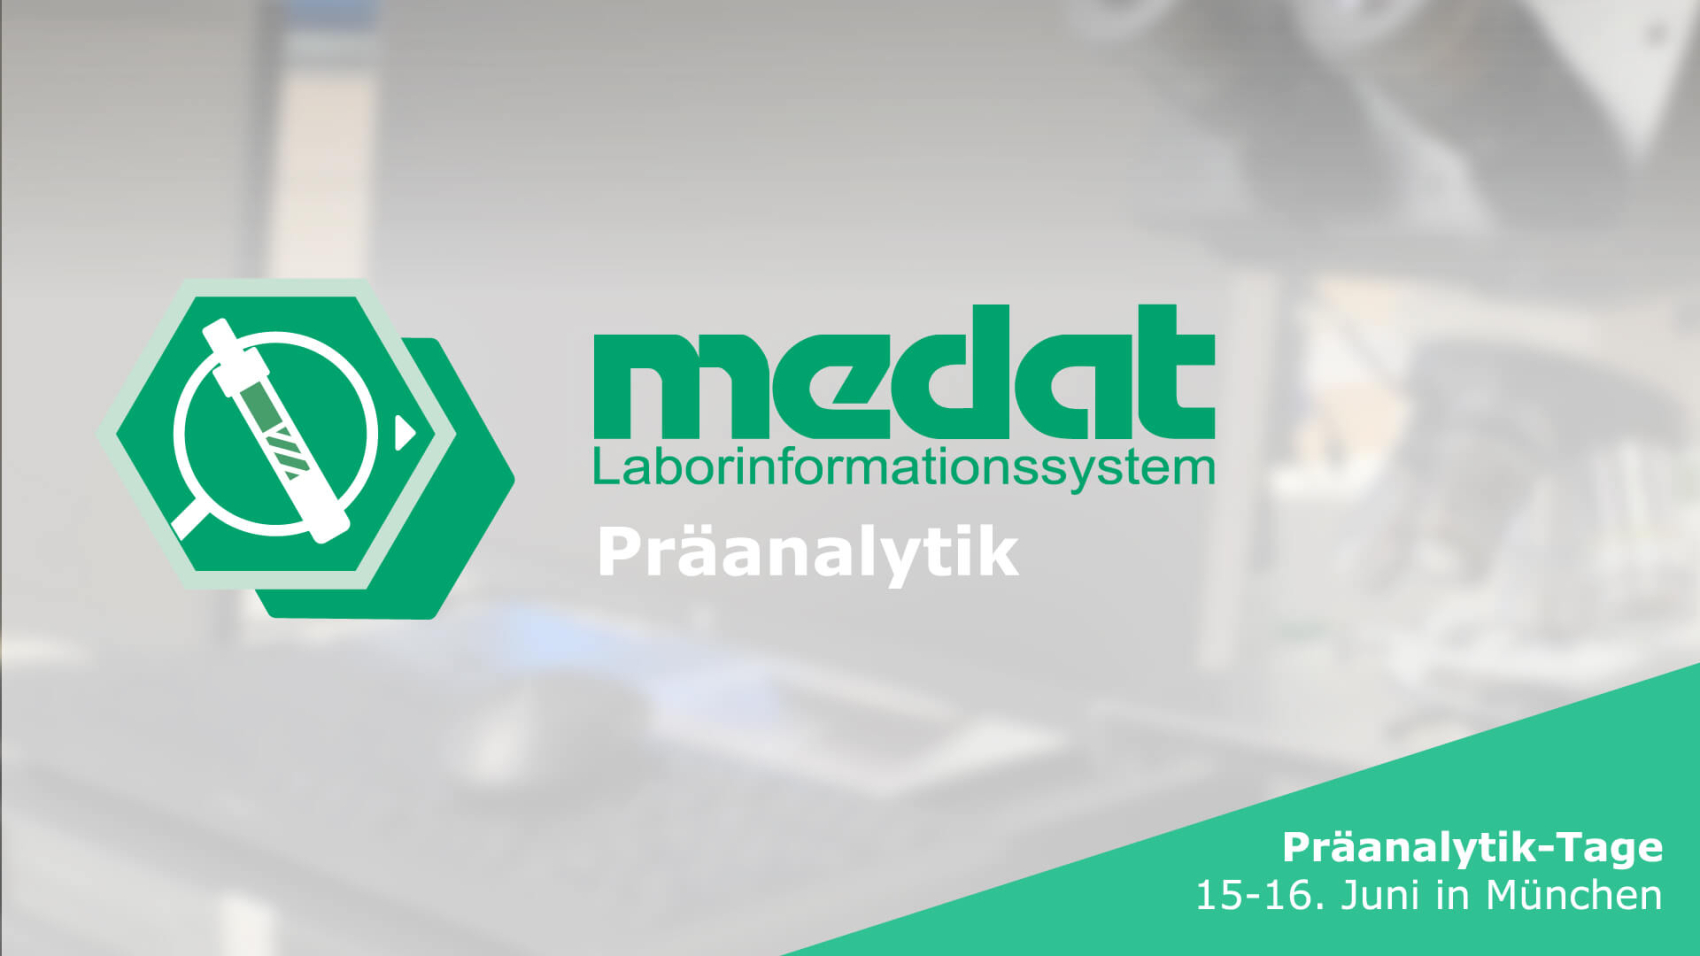 Informationsbanner für das neue Medat Modul mir der Aufschrift "Präanalytik", welches auf den Präanalytik-Tagen vom 15.06. bis 16.06. von Medat Computersyteme GmbH in München vorgestellt wird.